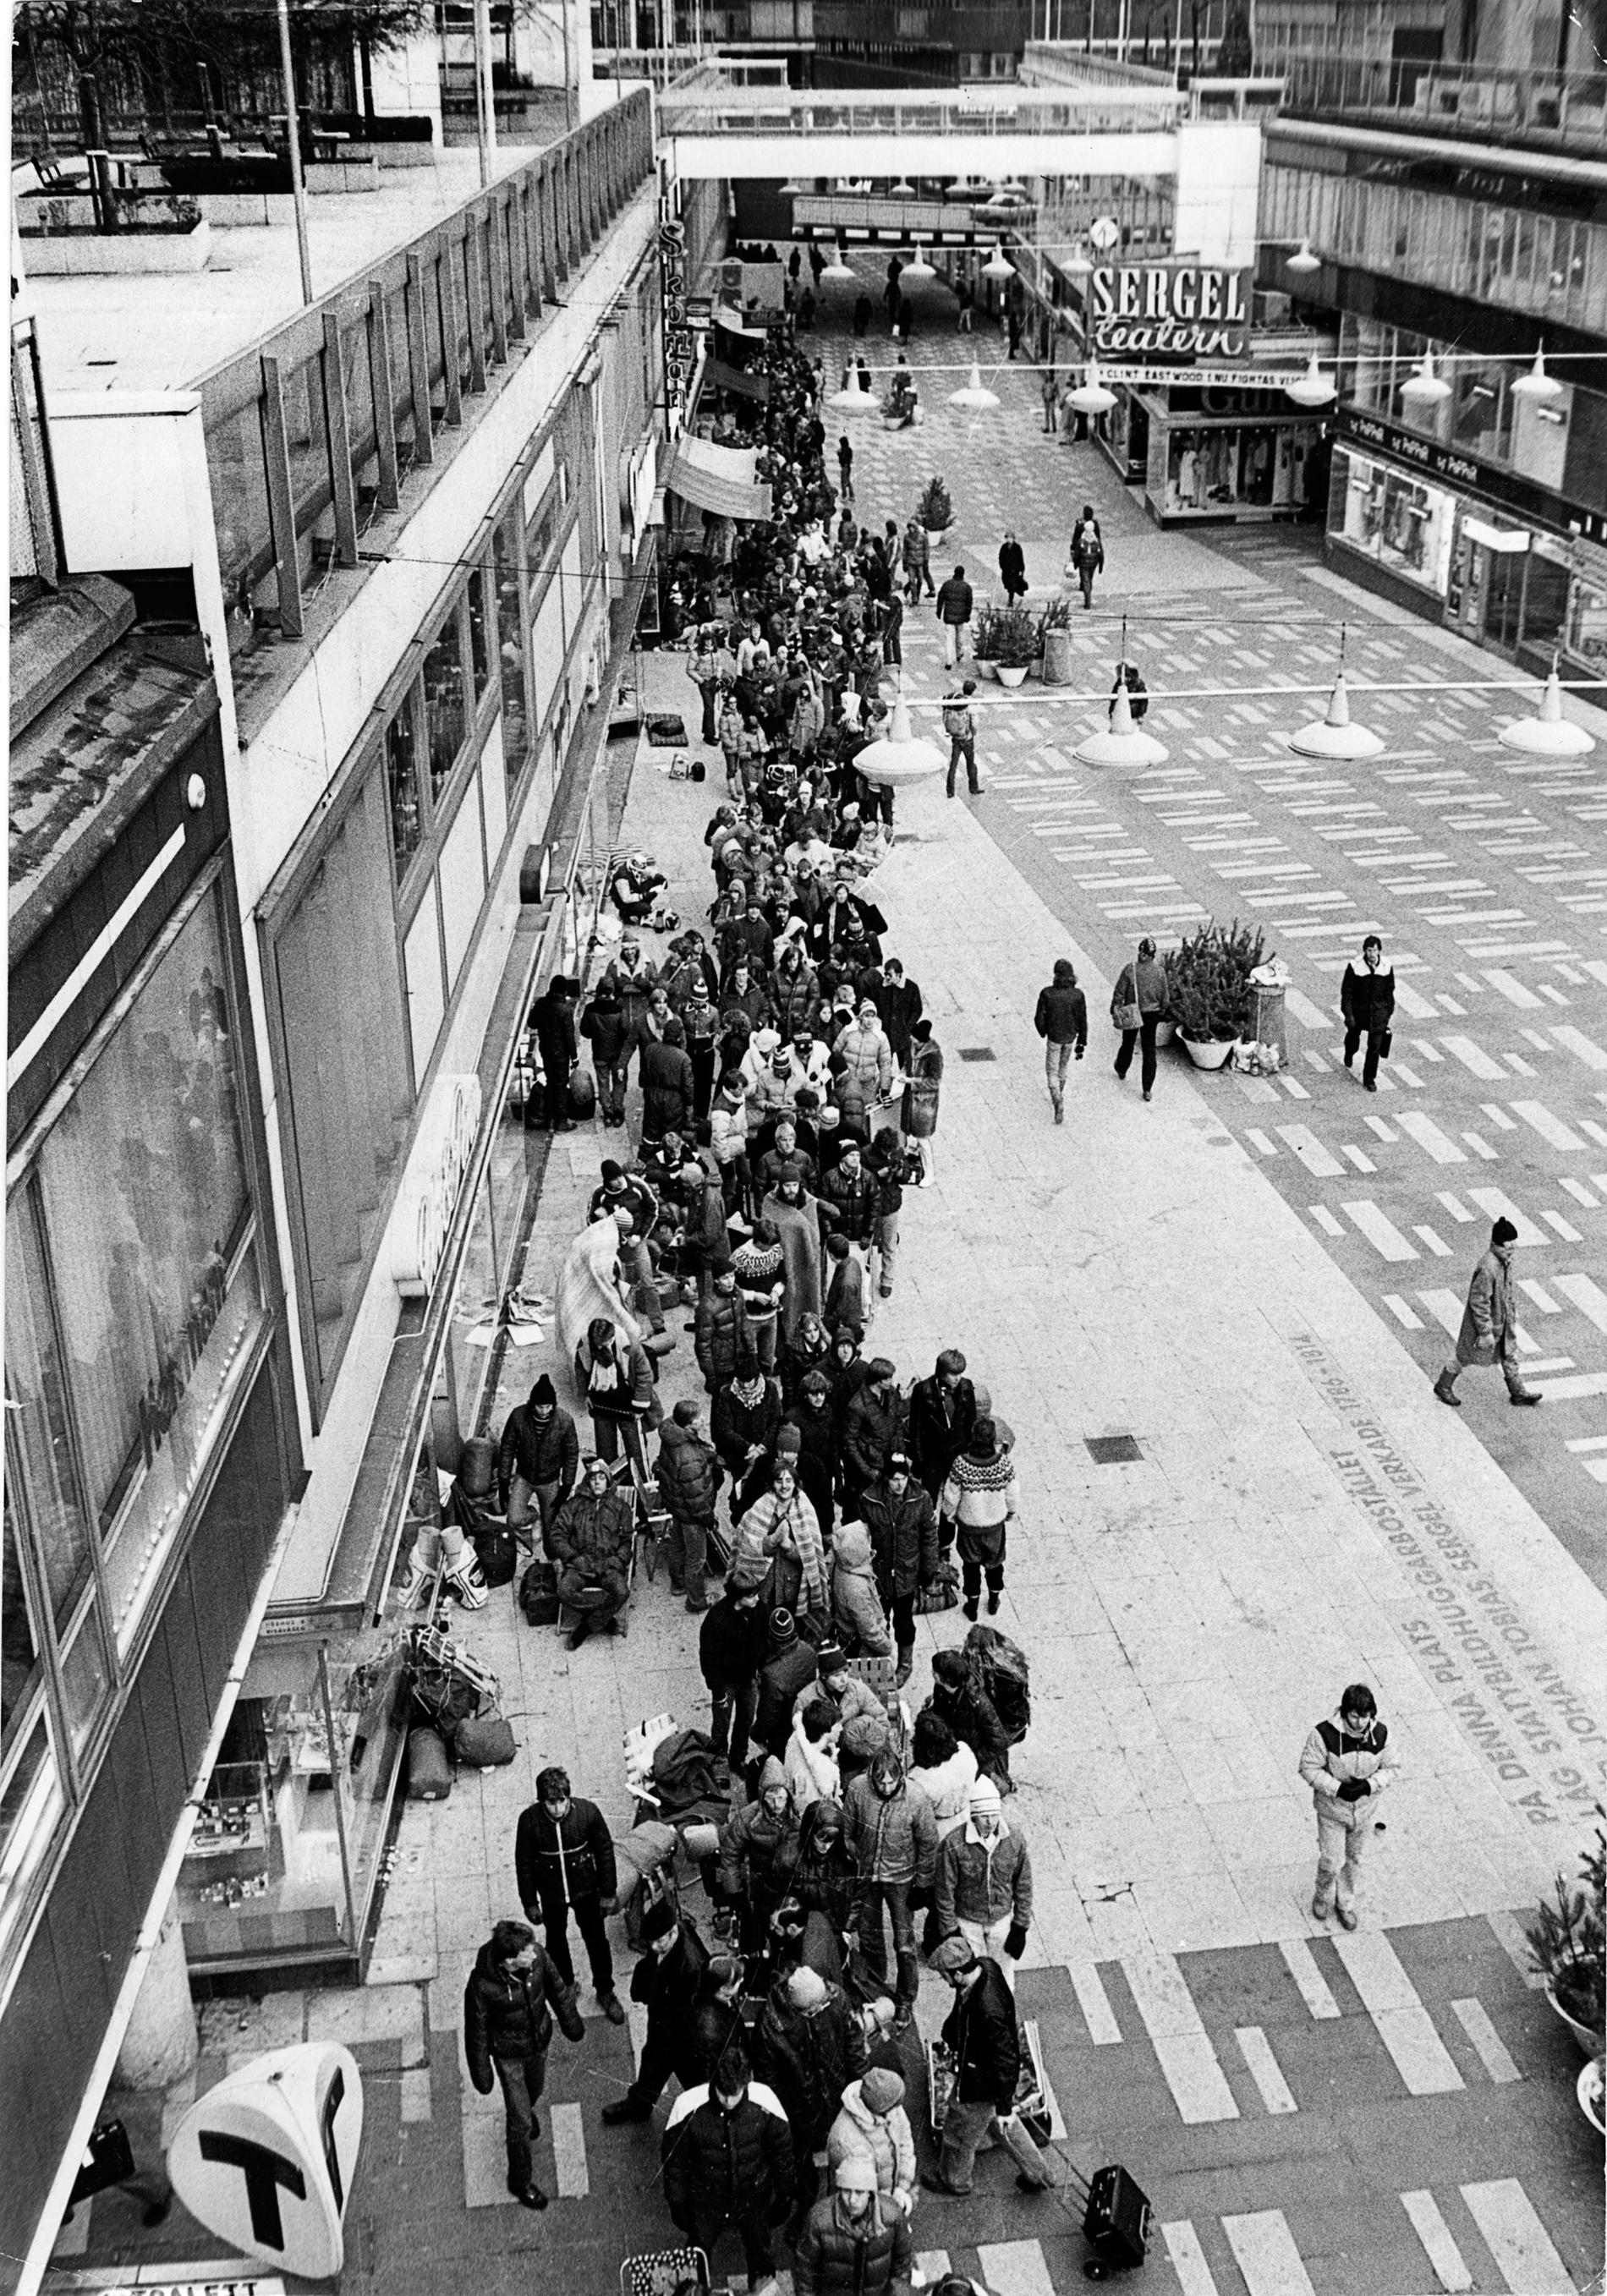 Fansen köar till Springsteen på Sergelgatan i centrala Stockholm 1981.